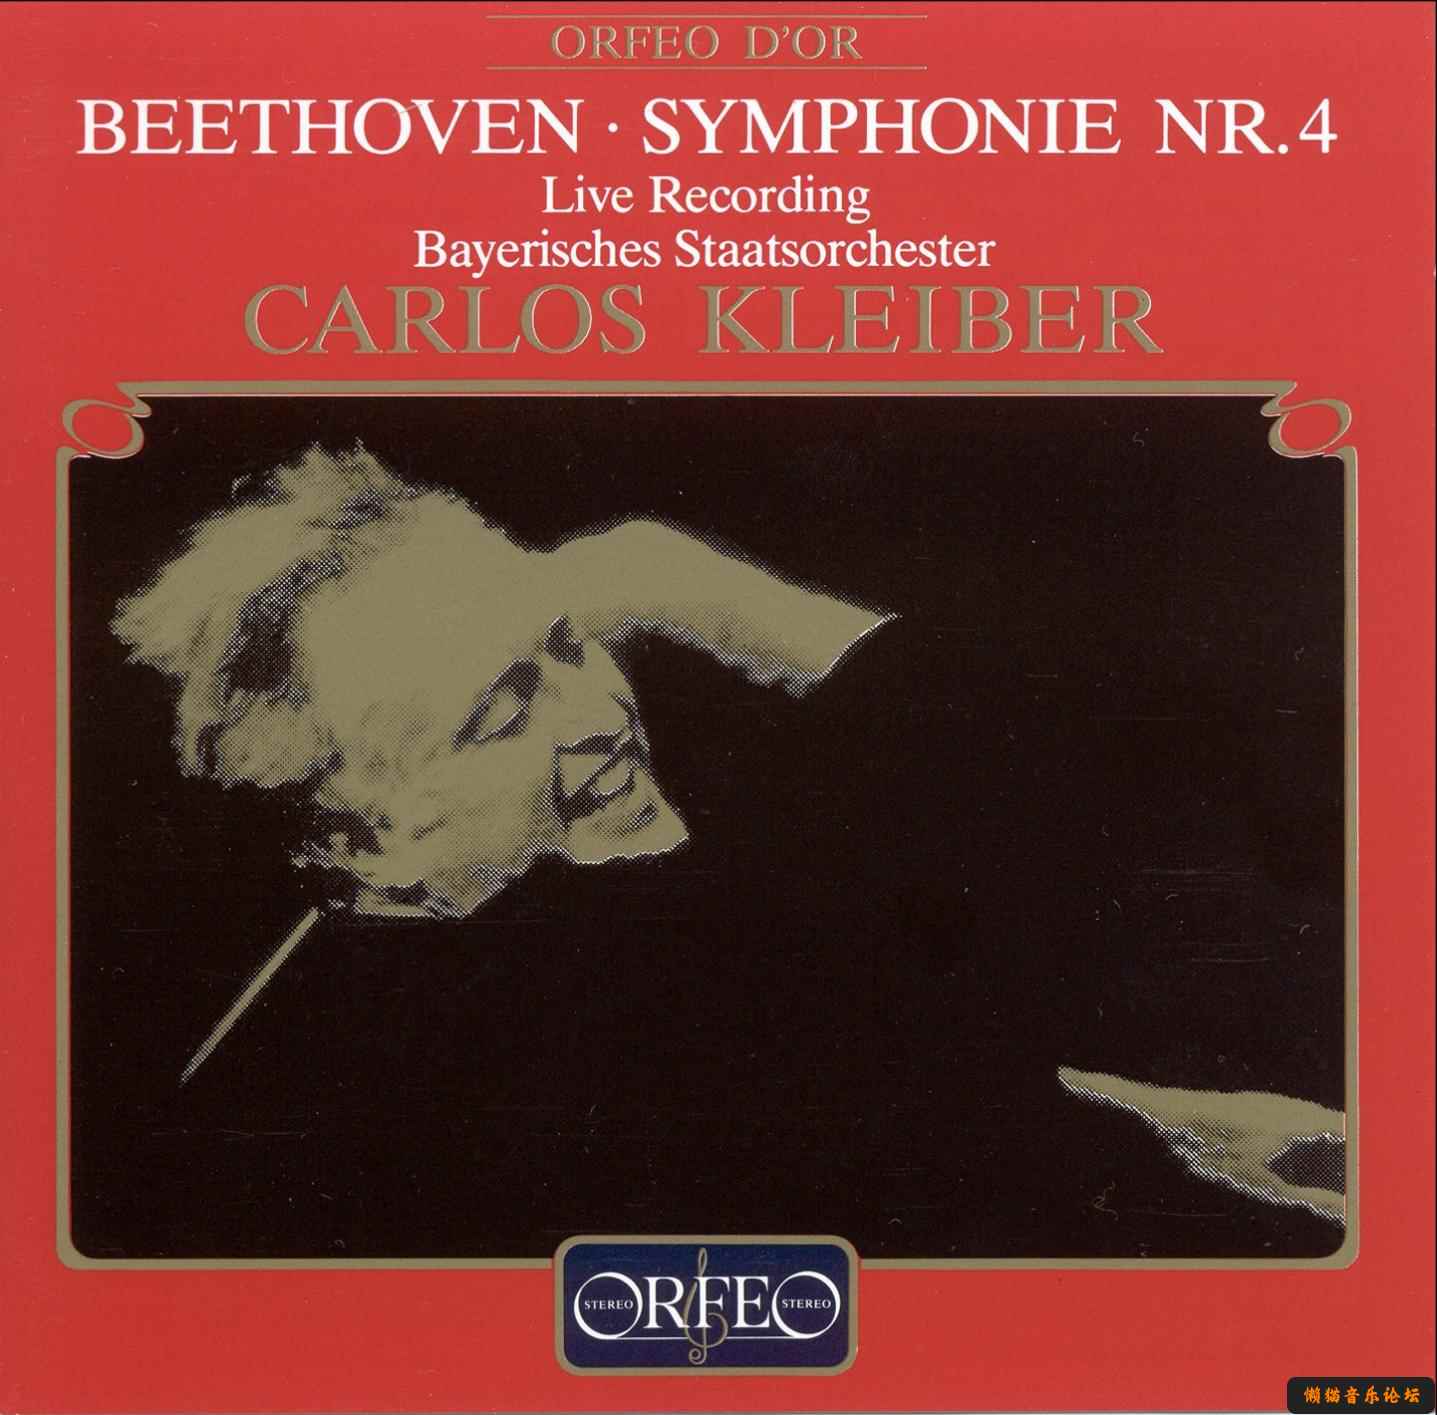 （16Bit）（FLAC）（CLASSICAL） Carlos Kleiber - Beethoven - Symphonies No.4 1984 16/44 16bit,封面,简介,摘自,网络, 6735